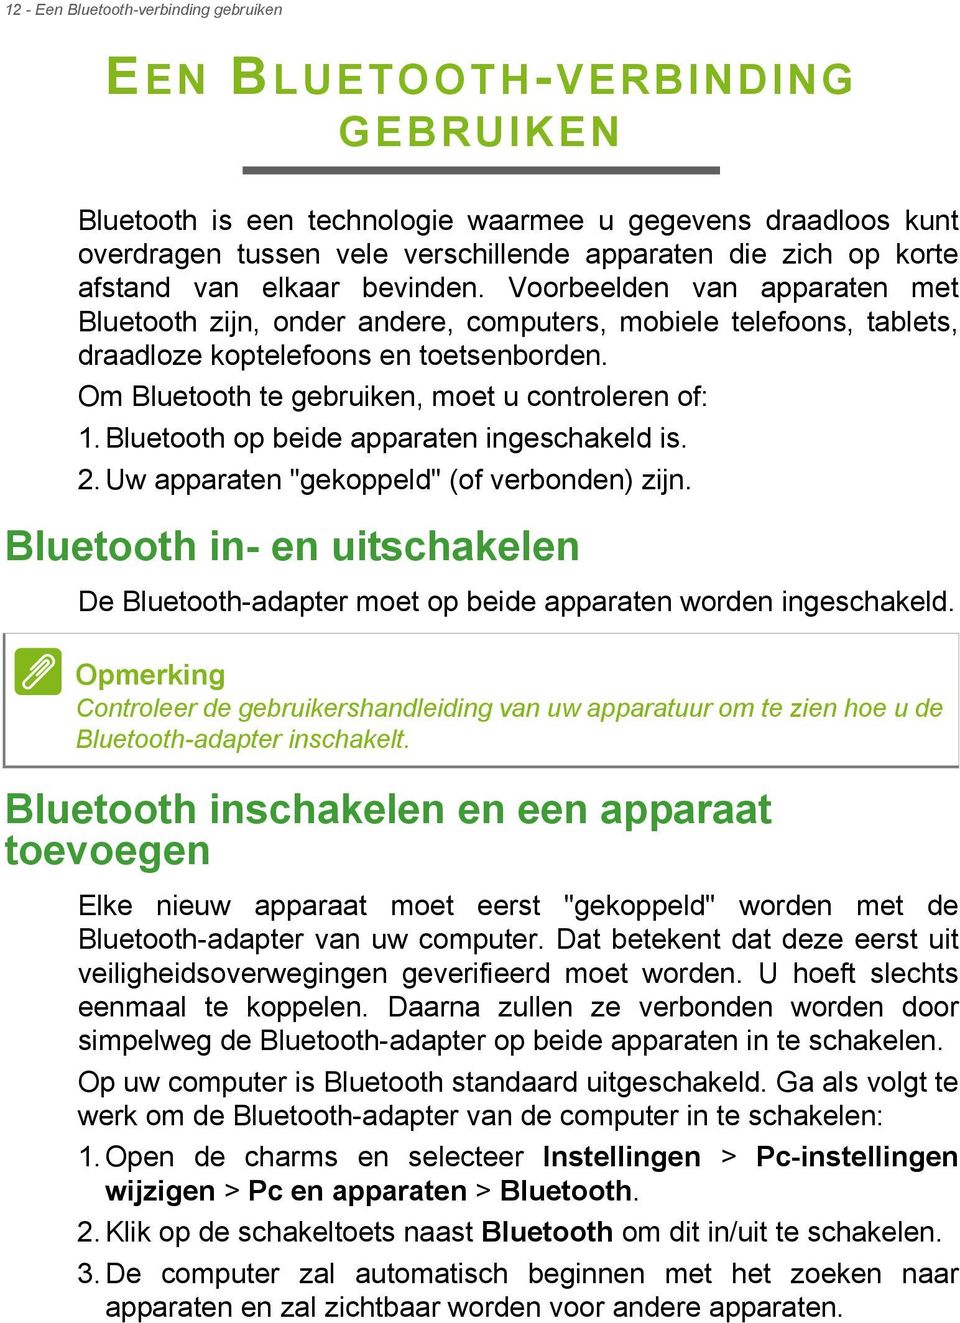 Om Bluetooth te gebruiken, moet u controleren of: 1. Bluetooth op beide apparaten ingeschakeld is. 2. Uw apparaten "gekoppeld" (of verbonden) zijn.